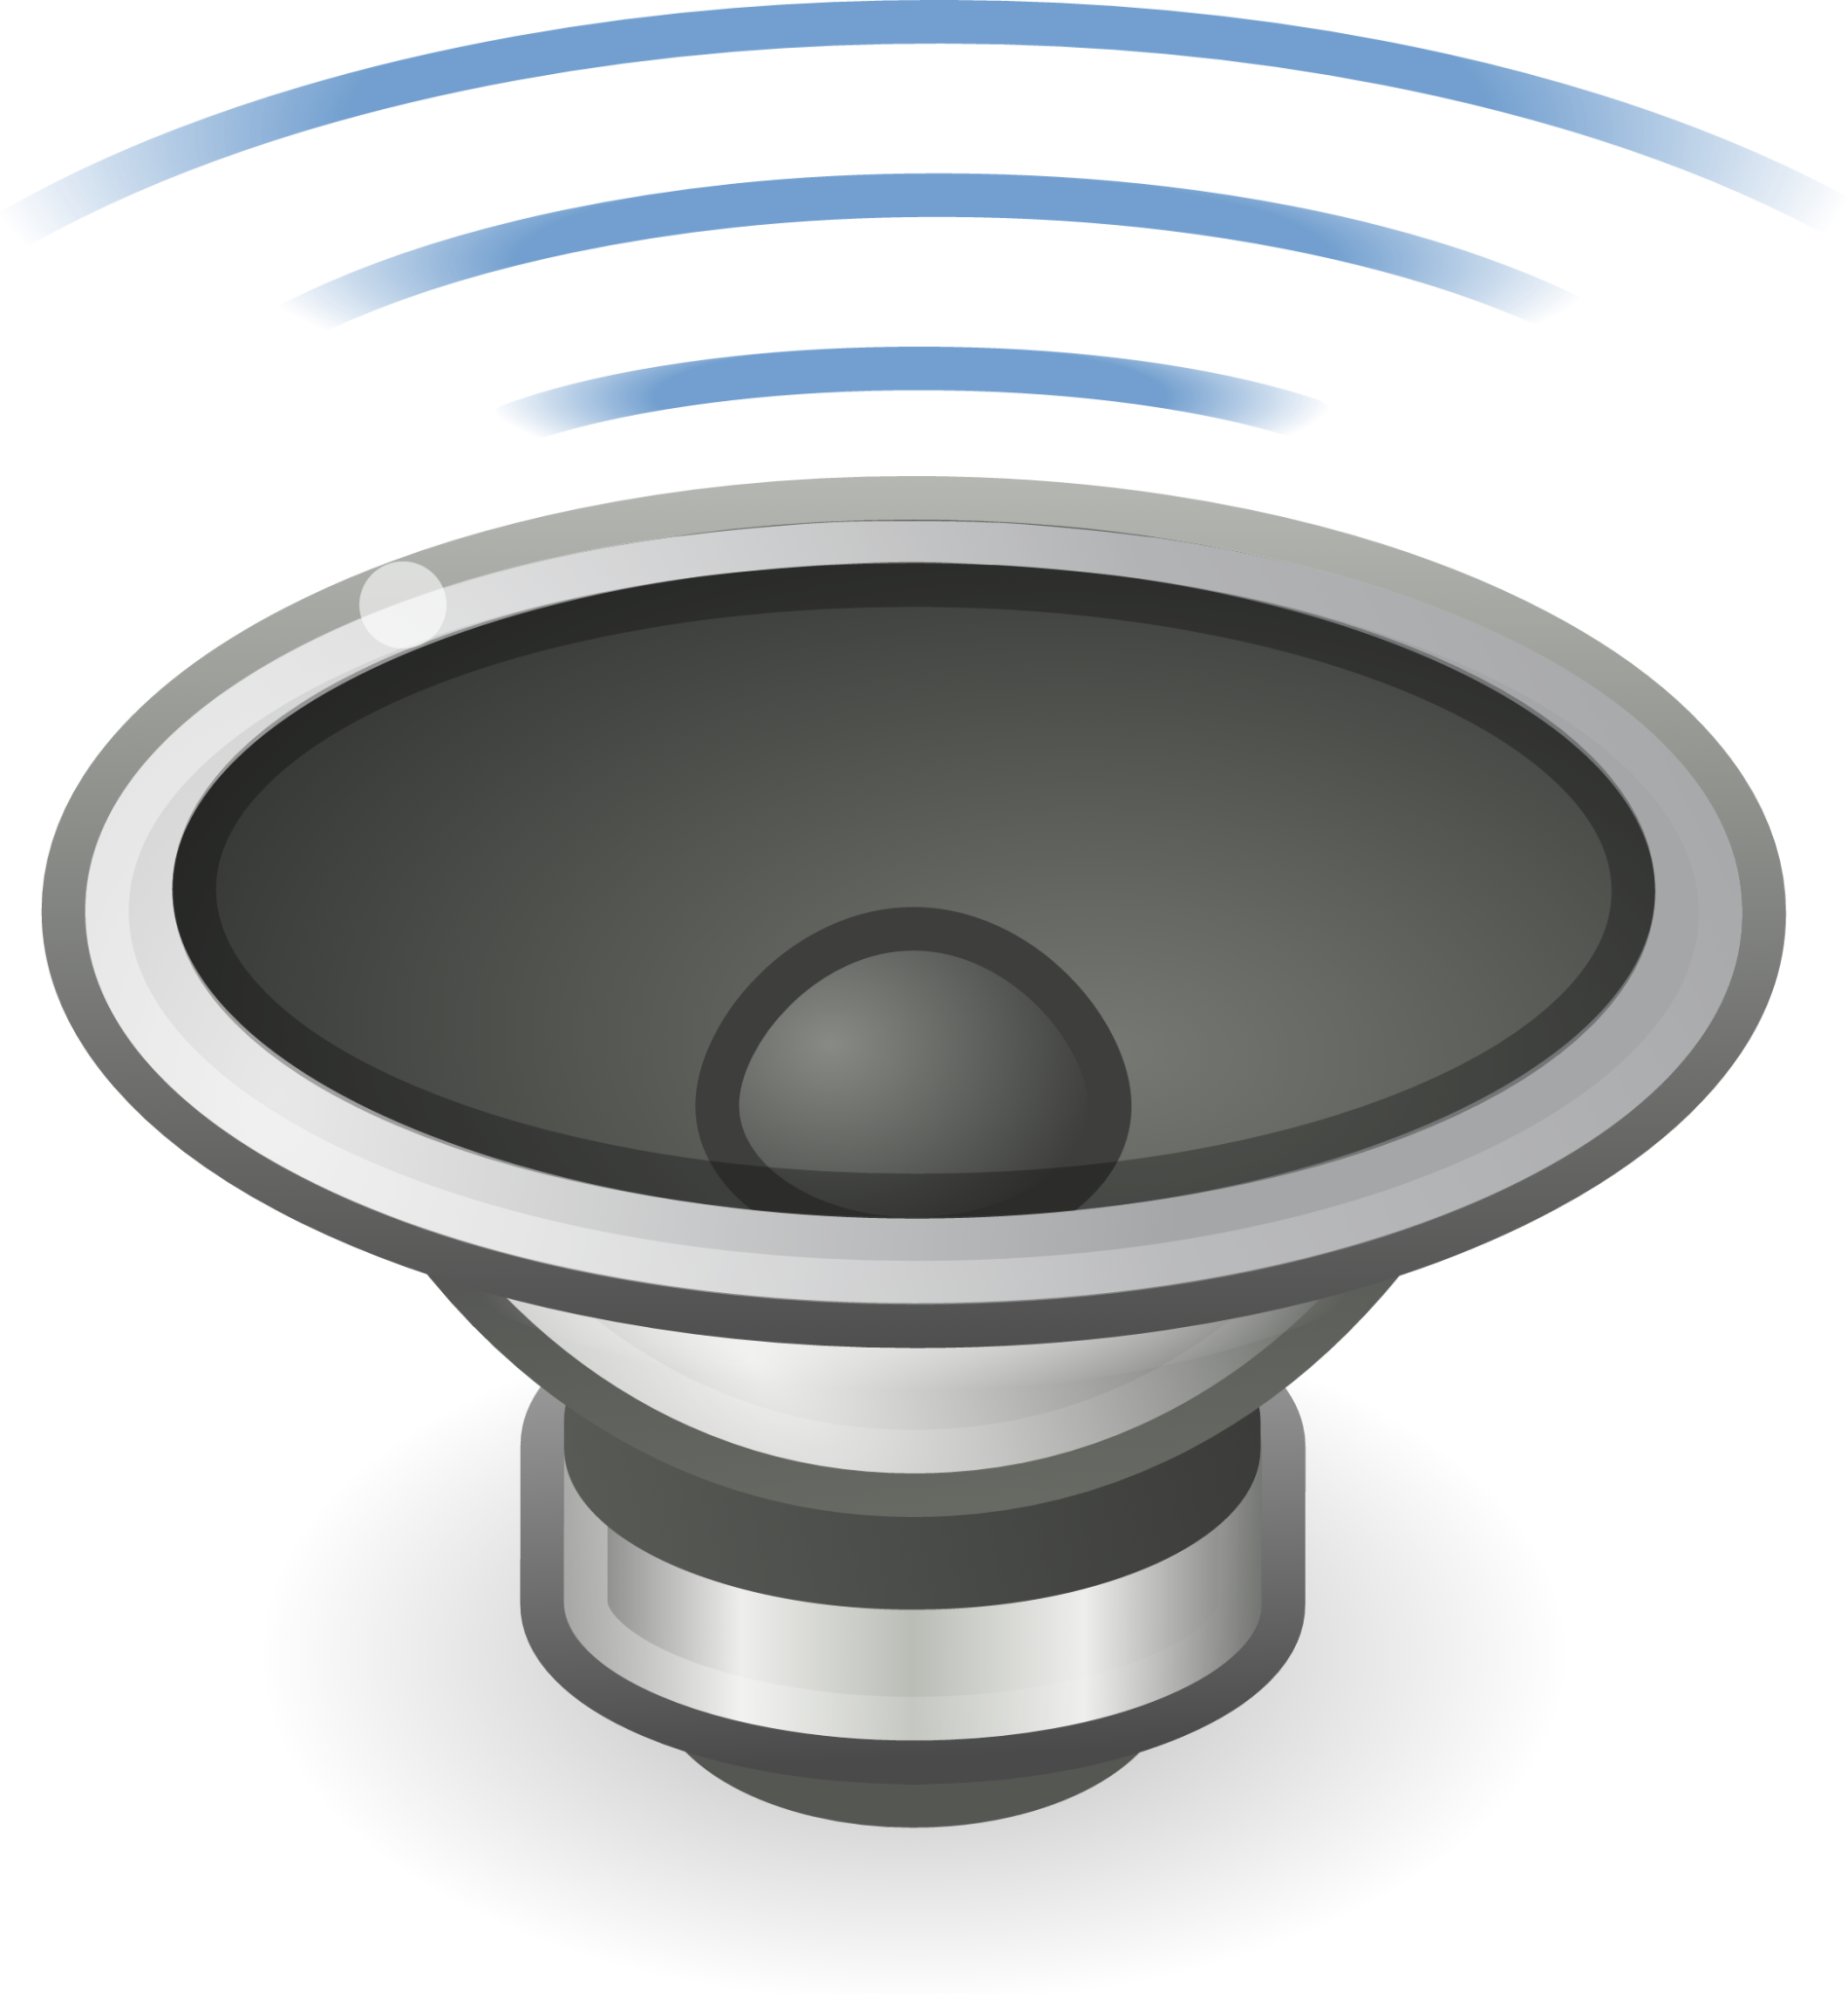 audio speaker center back testing icon